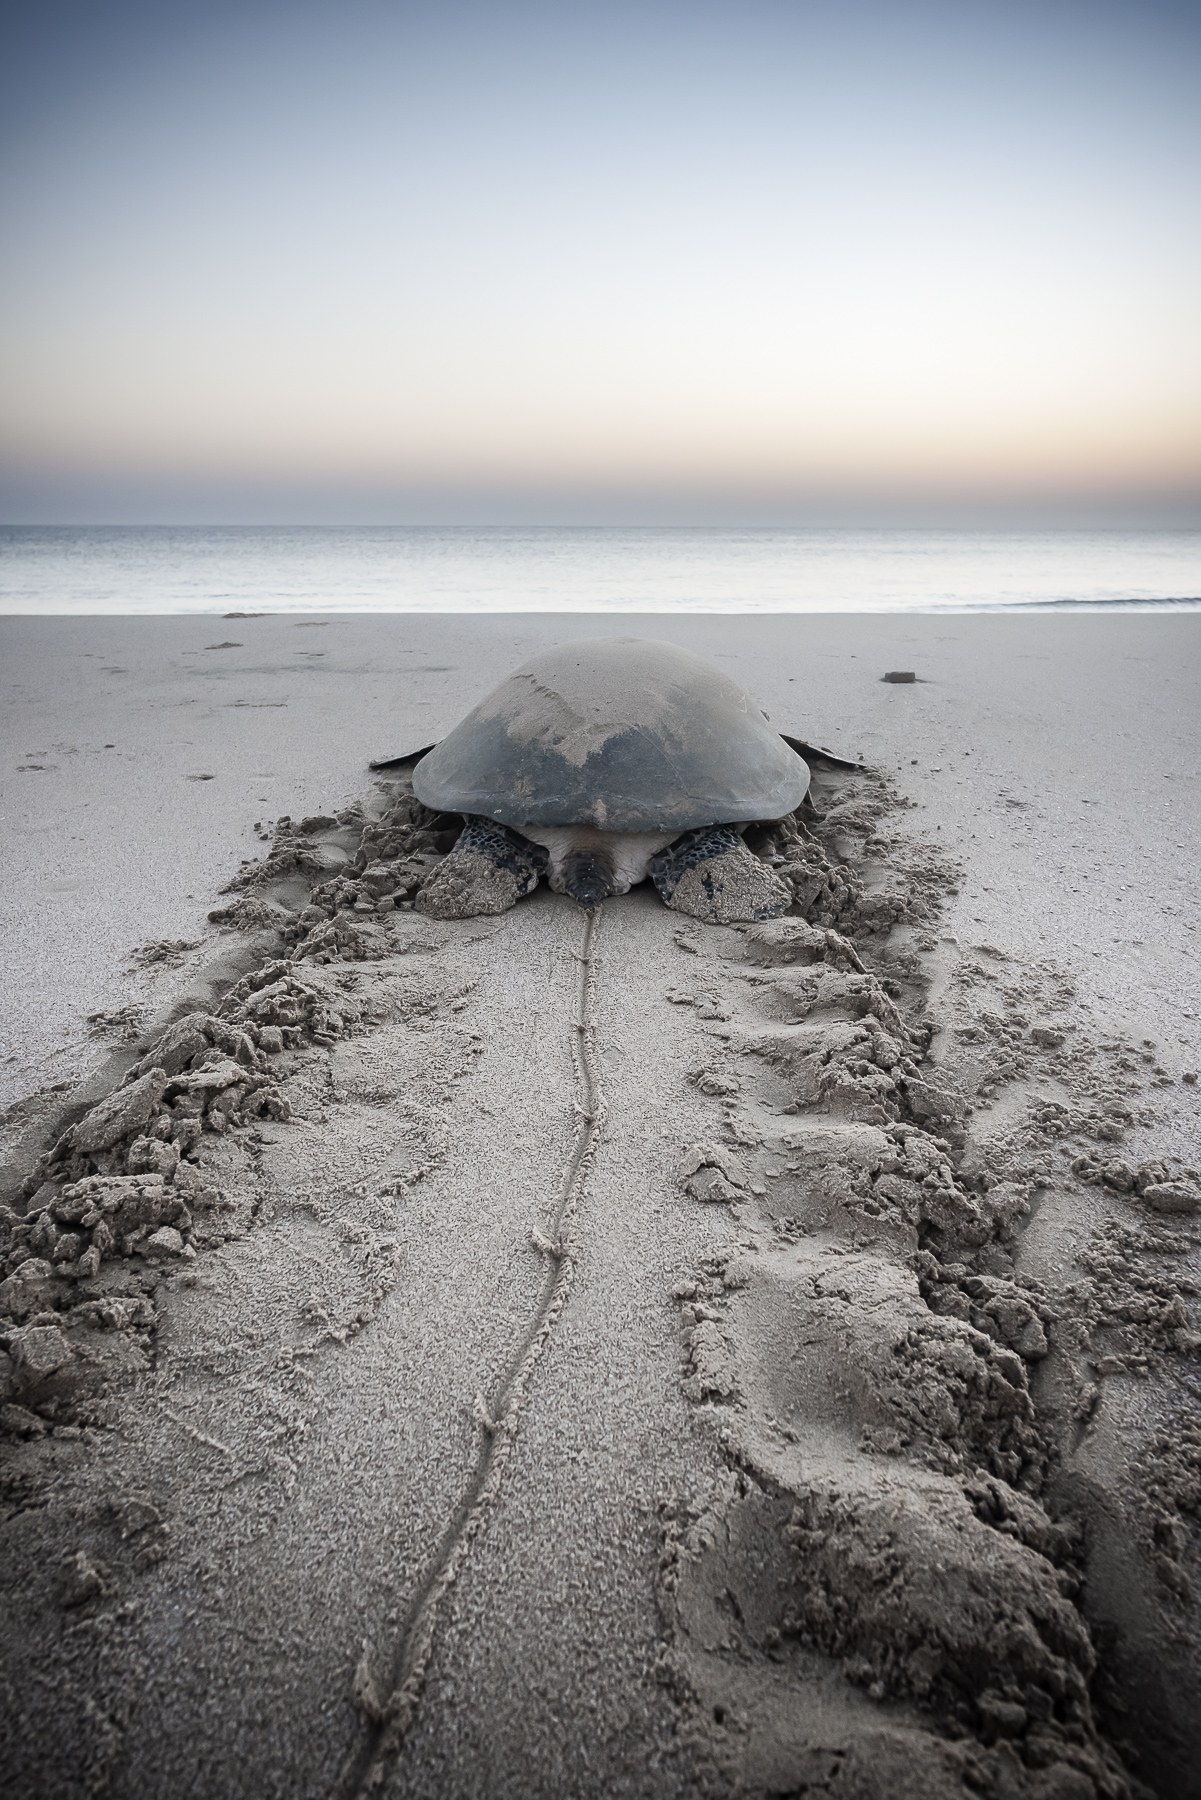 Serene Sea Turtle at Dawn - Ras Al Hadd, Sultanate of Oman